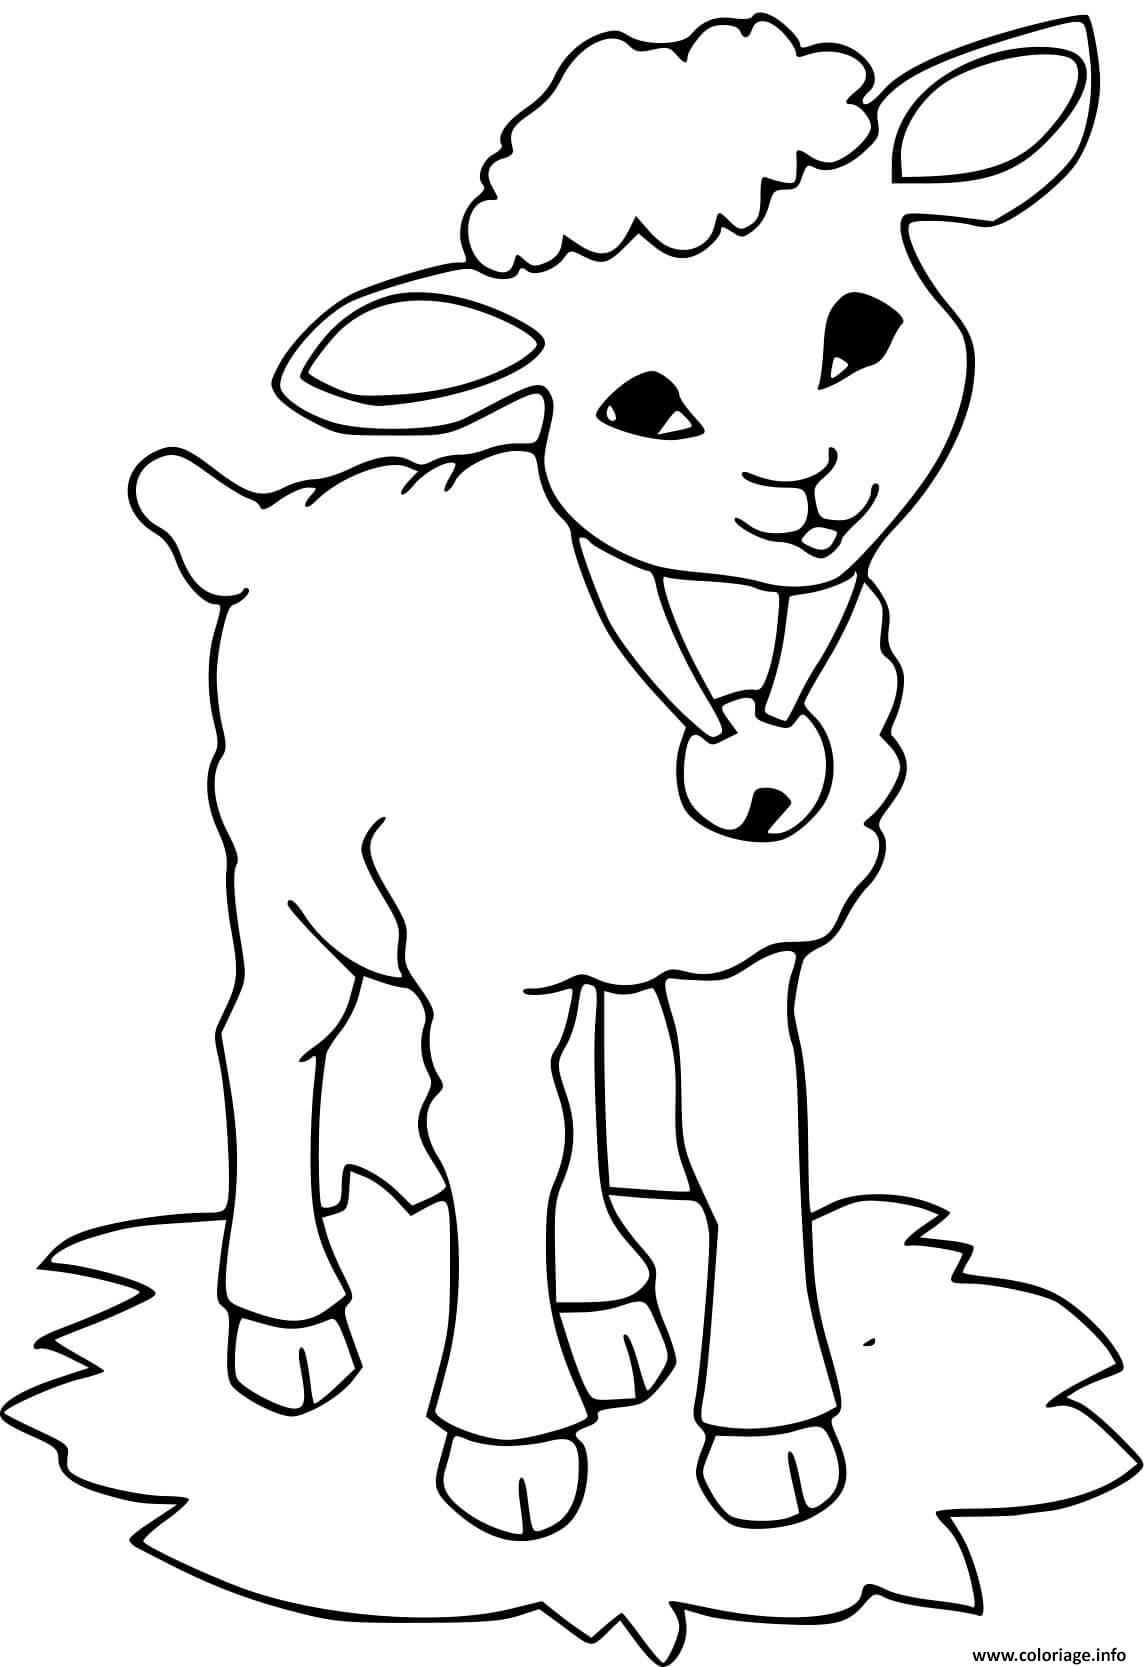 Dessin un mouton avec une cloche autour du cou Coloriage Gratuit à Imprimer